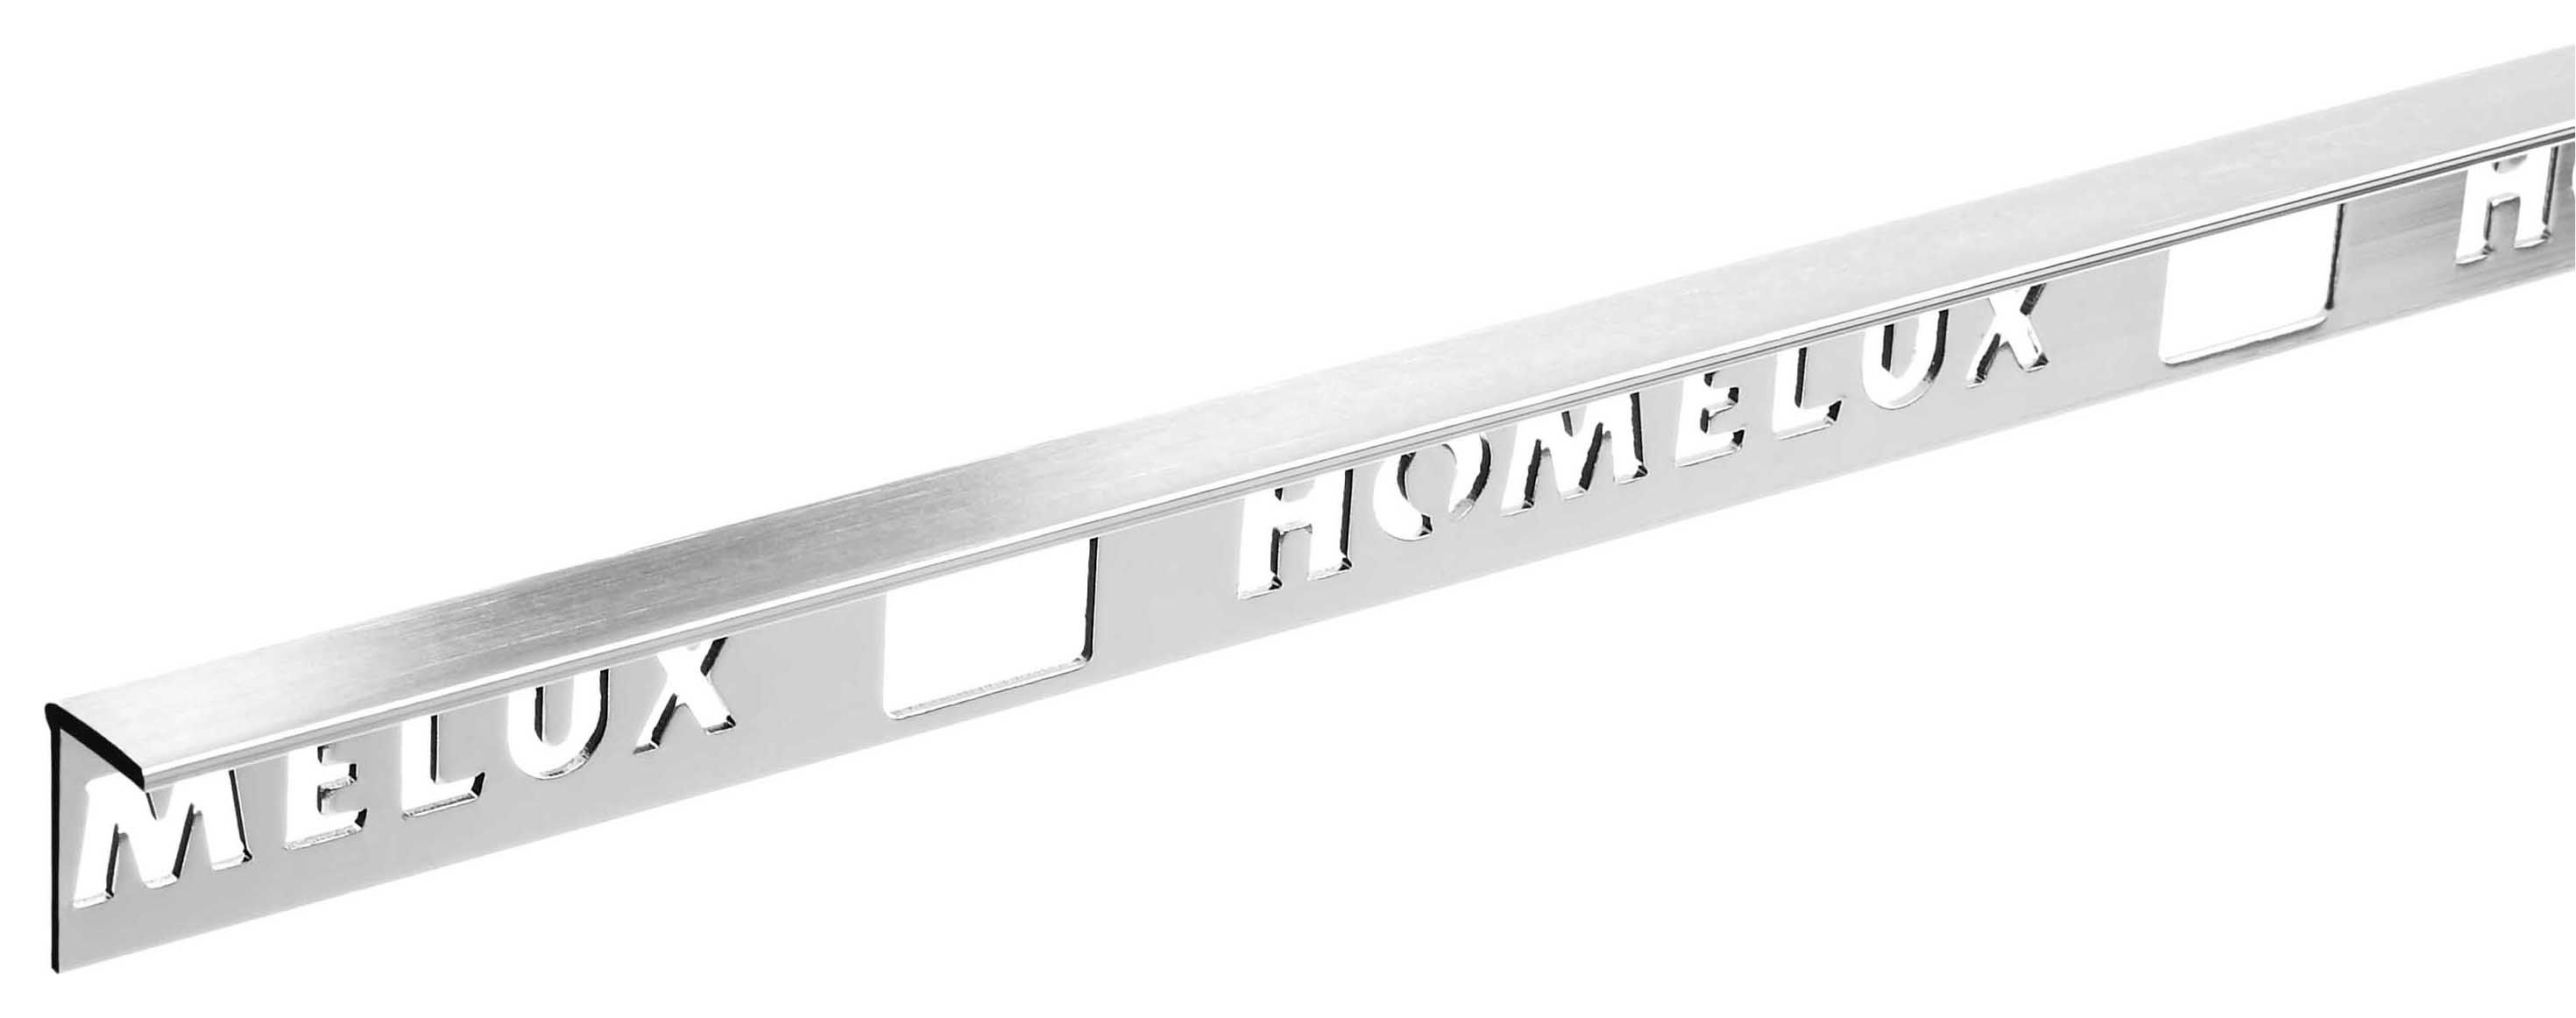 Homelux 10mm Metal Straight Stainless Steel Tile Trim - 2.44m